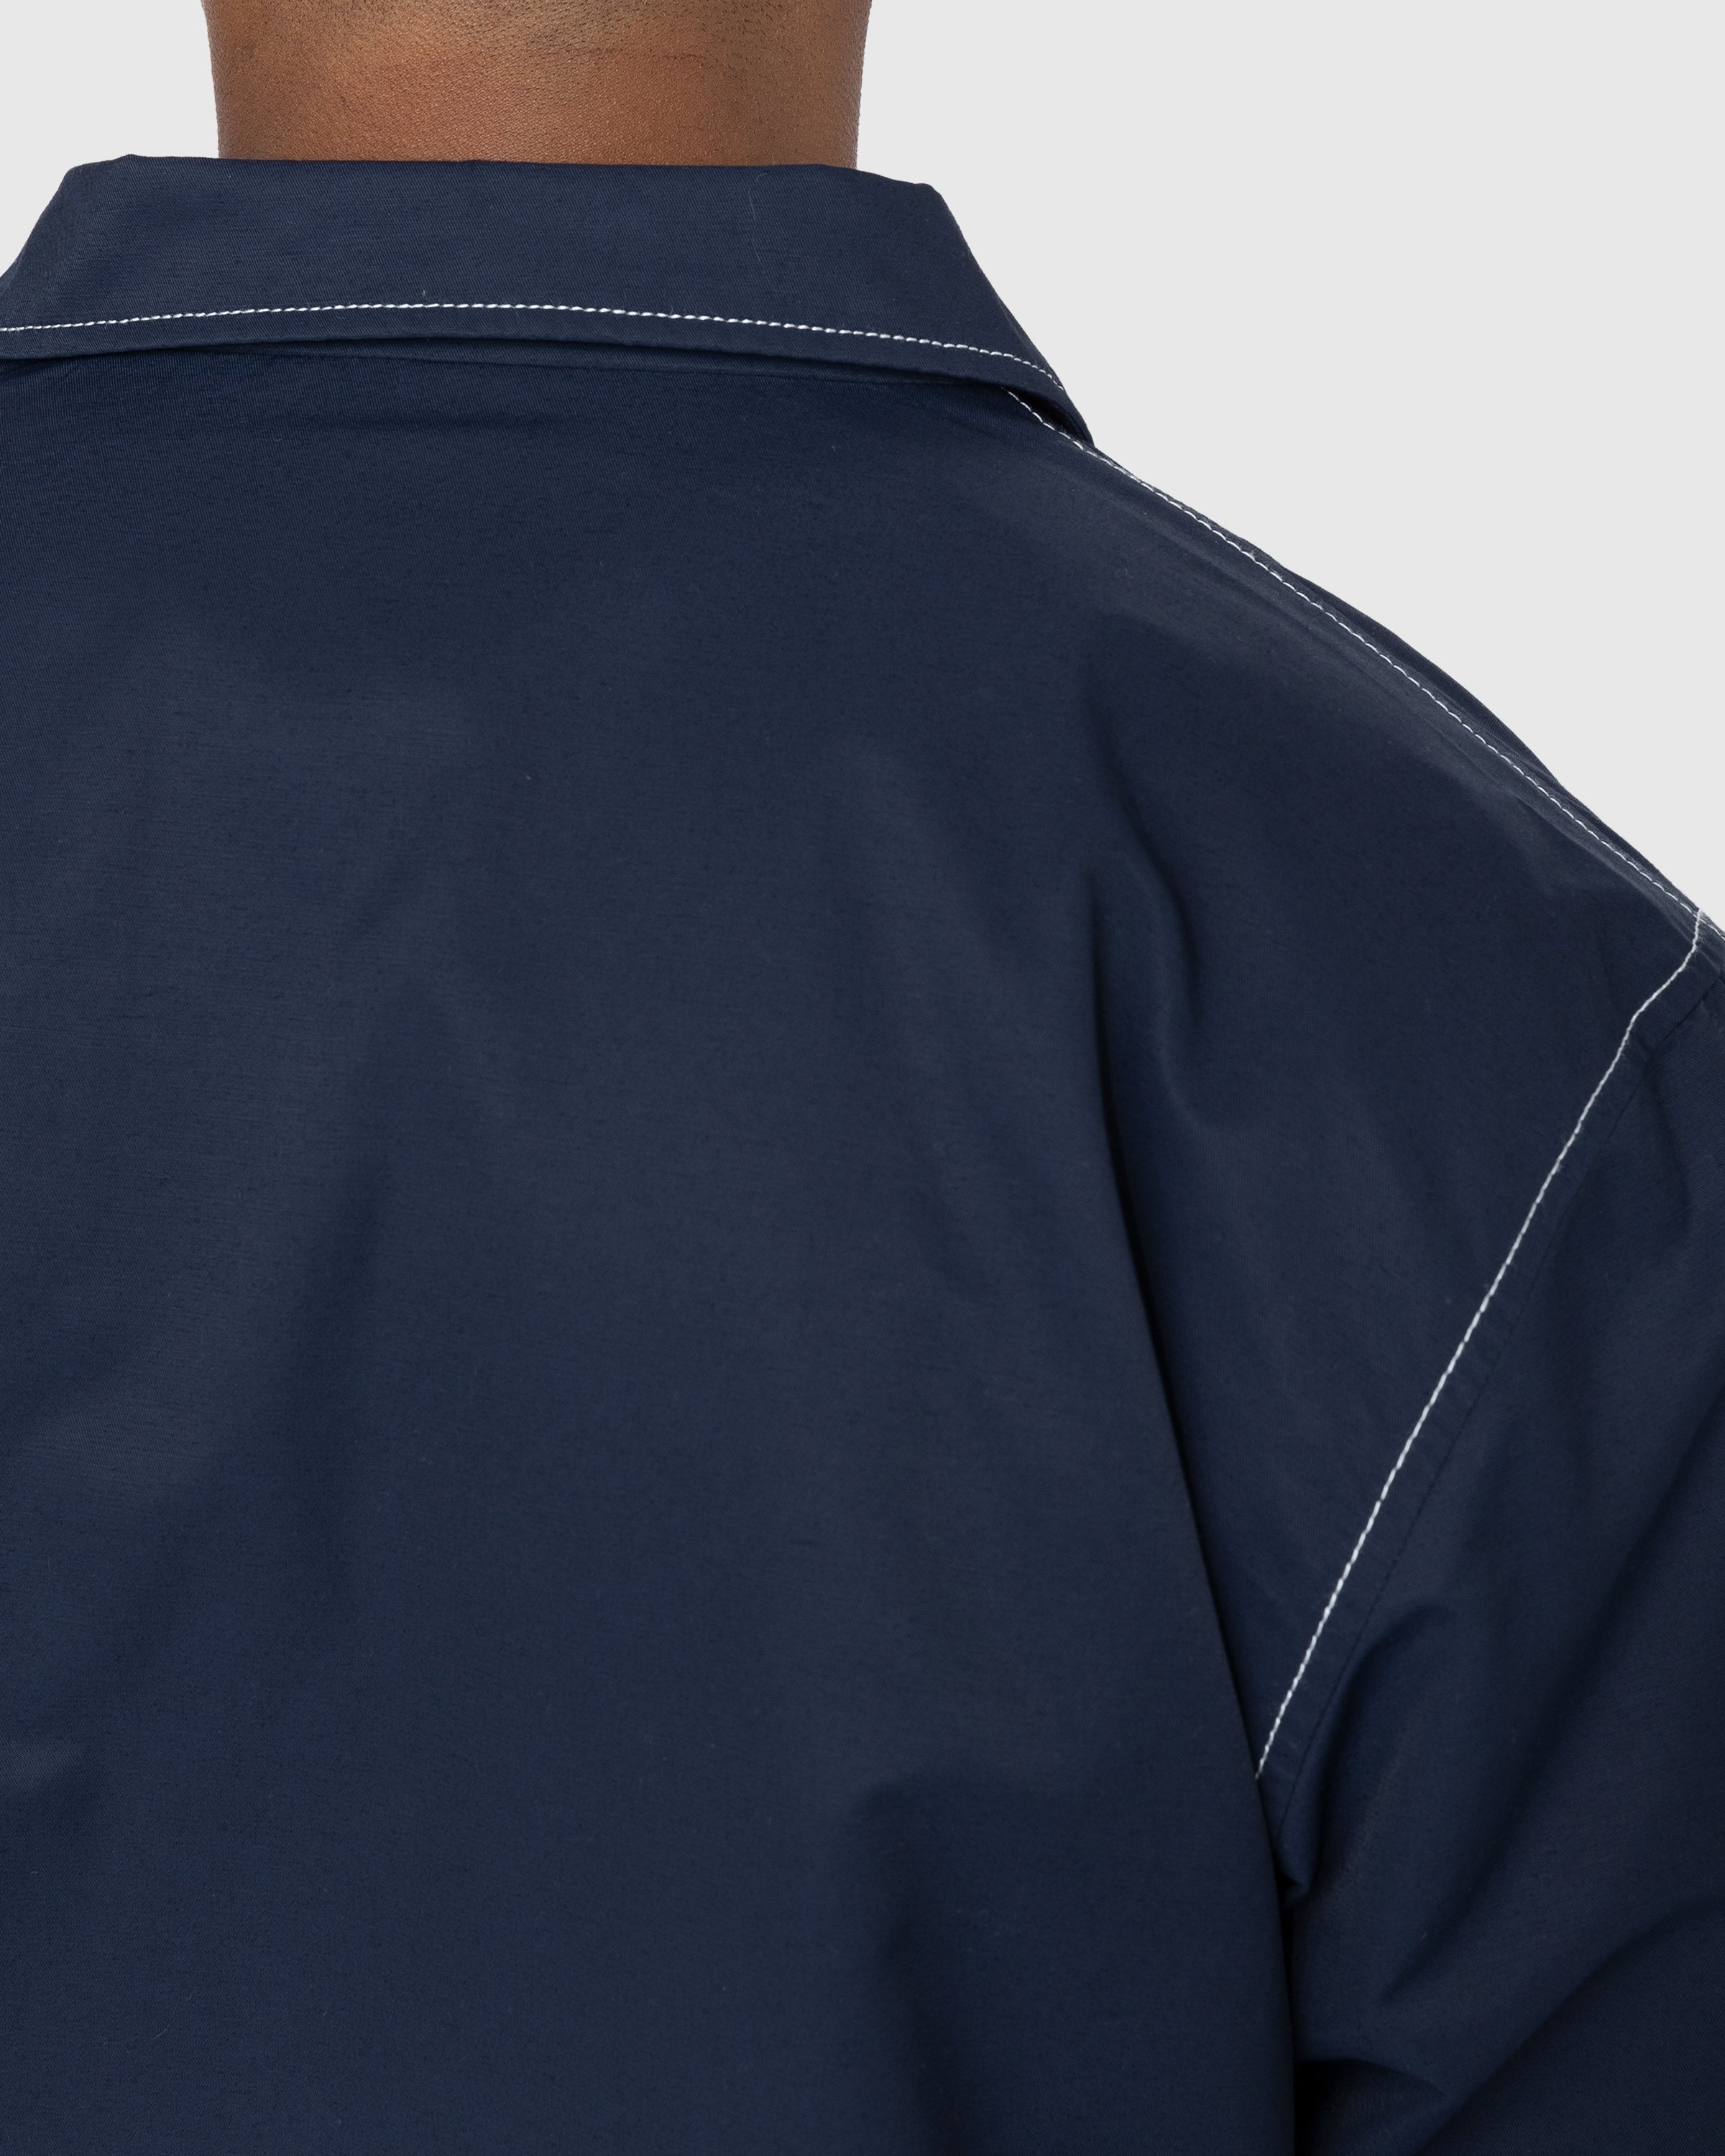 Highsnobiety - Brushed Nylon Jacket Navy - Clothing - Blue - Image 5